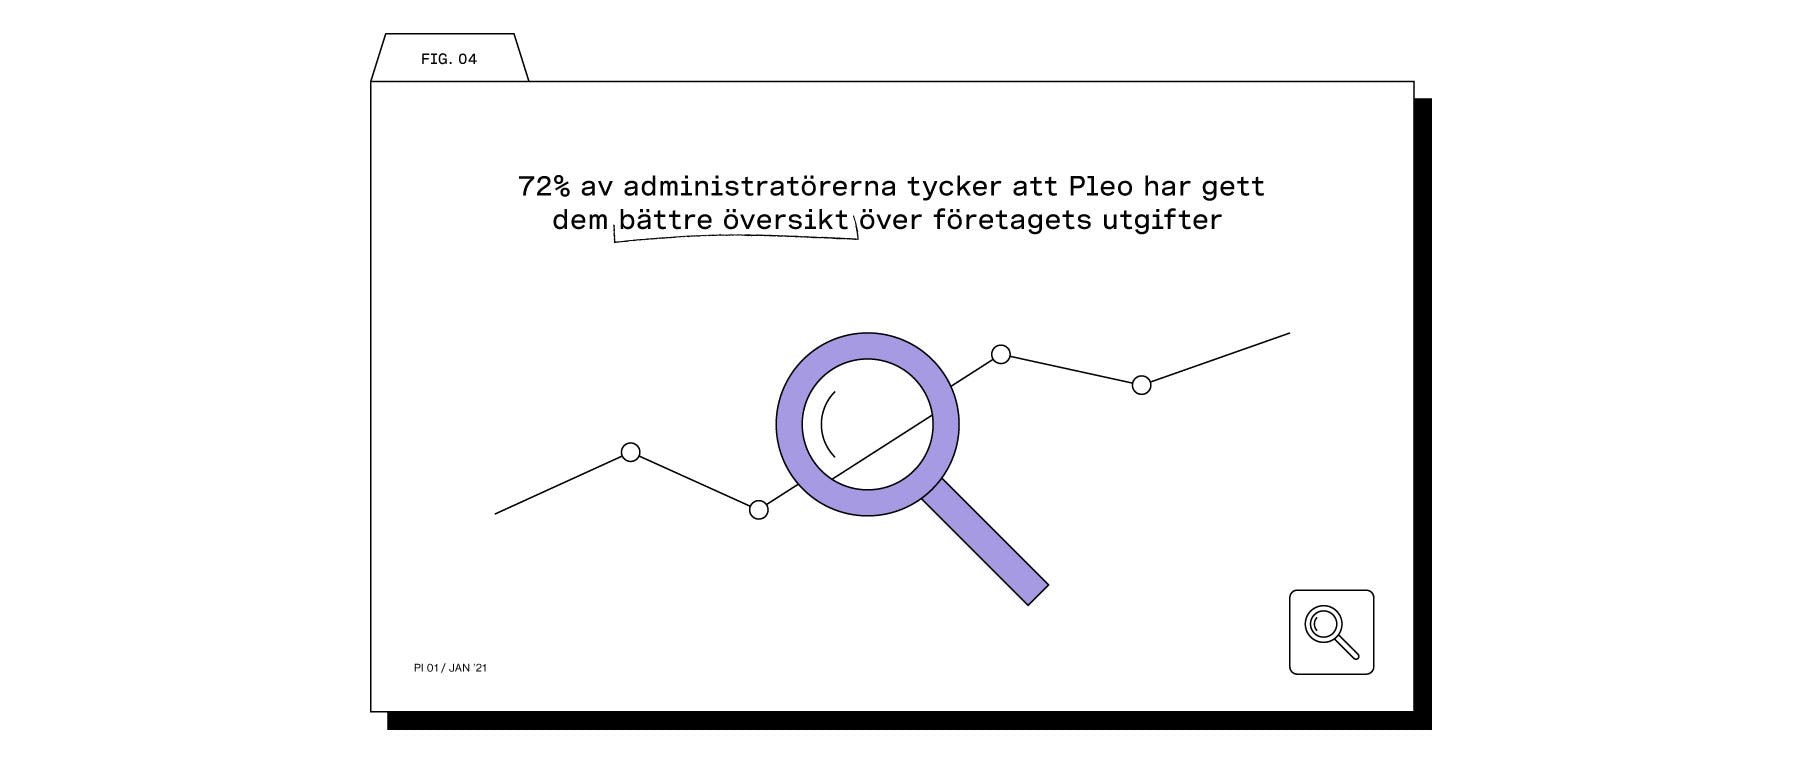 72% av administratörerna tycker att Pleo har gett dem bättre översikt över företagets utgifter